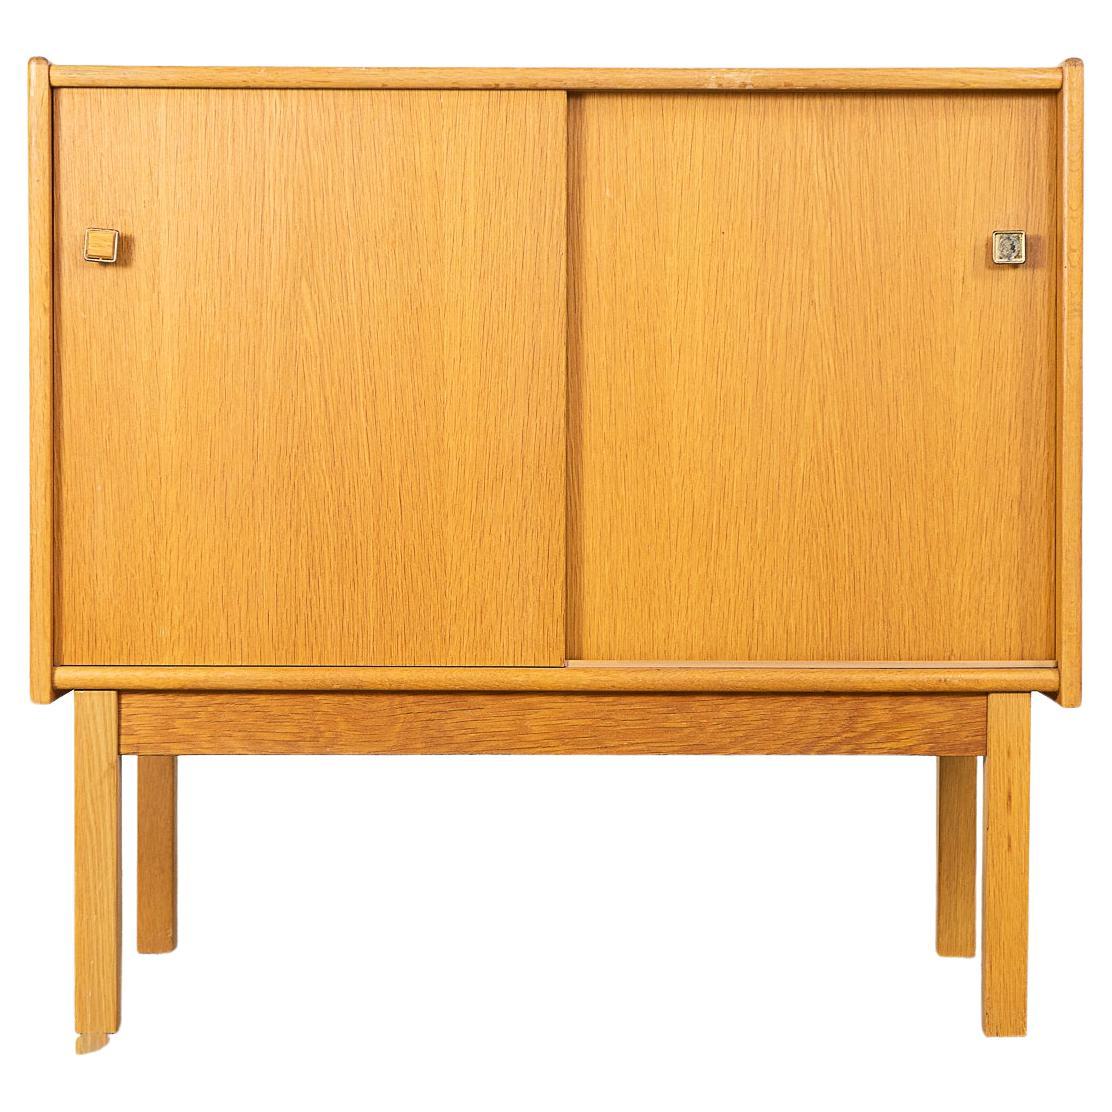 Danish Mid-Century Modern Oak Cabinet For Sale